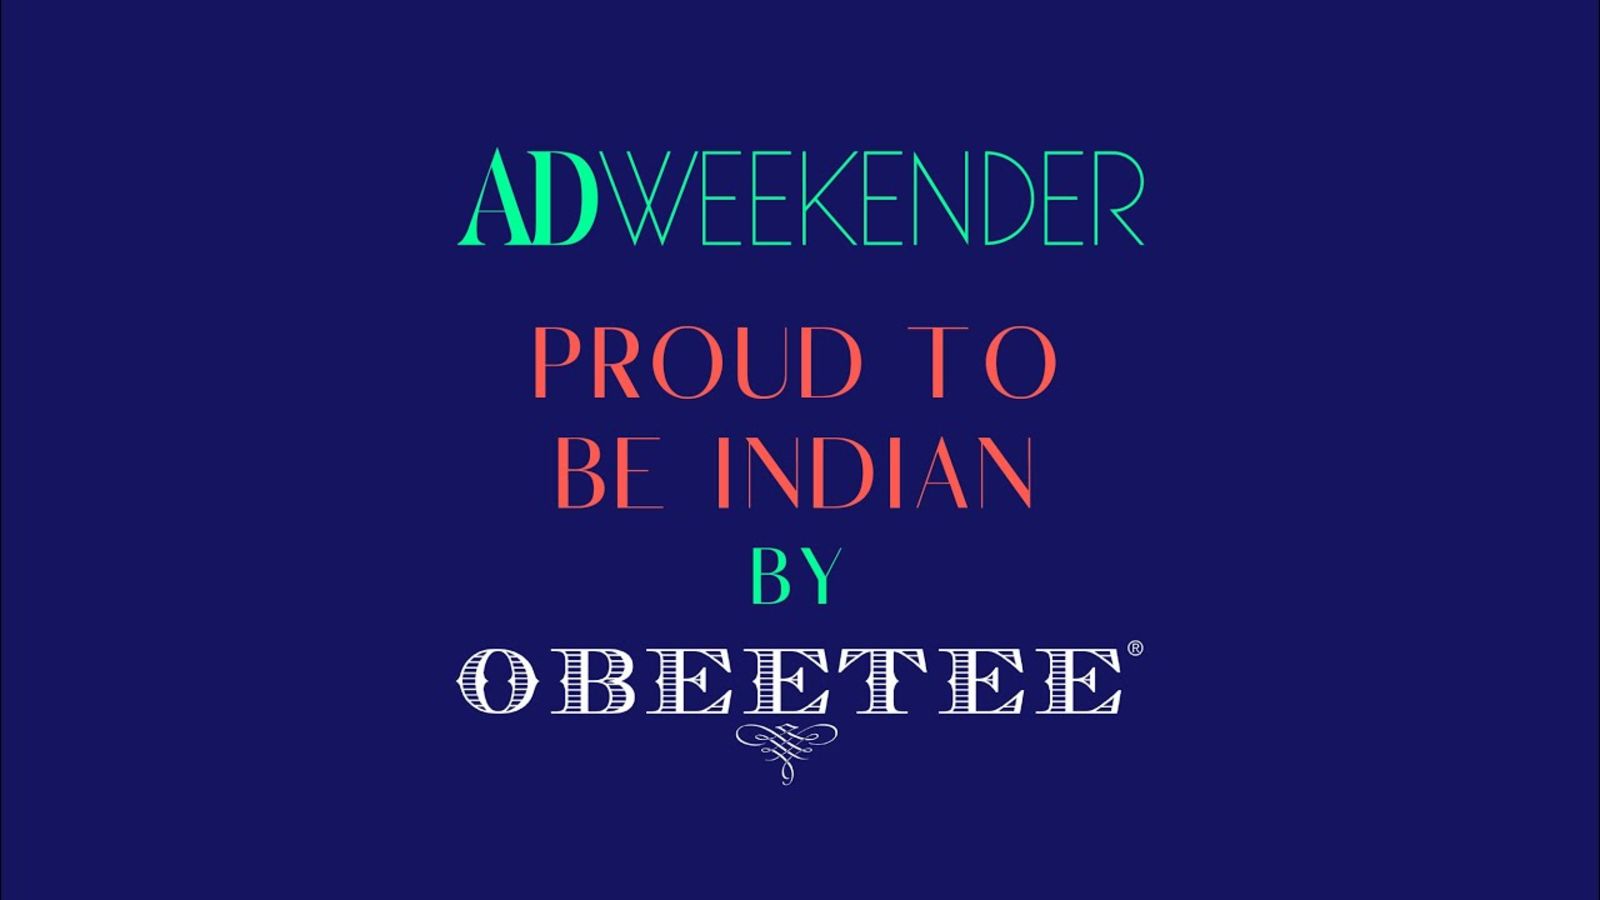 AD Weekender - OBEETEE Webinar